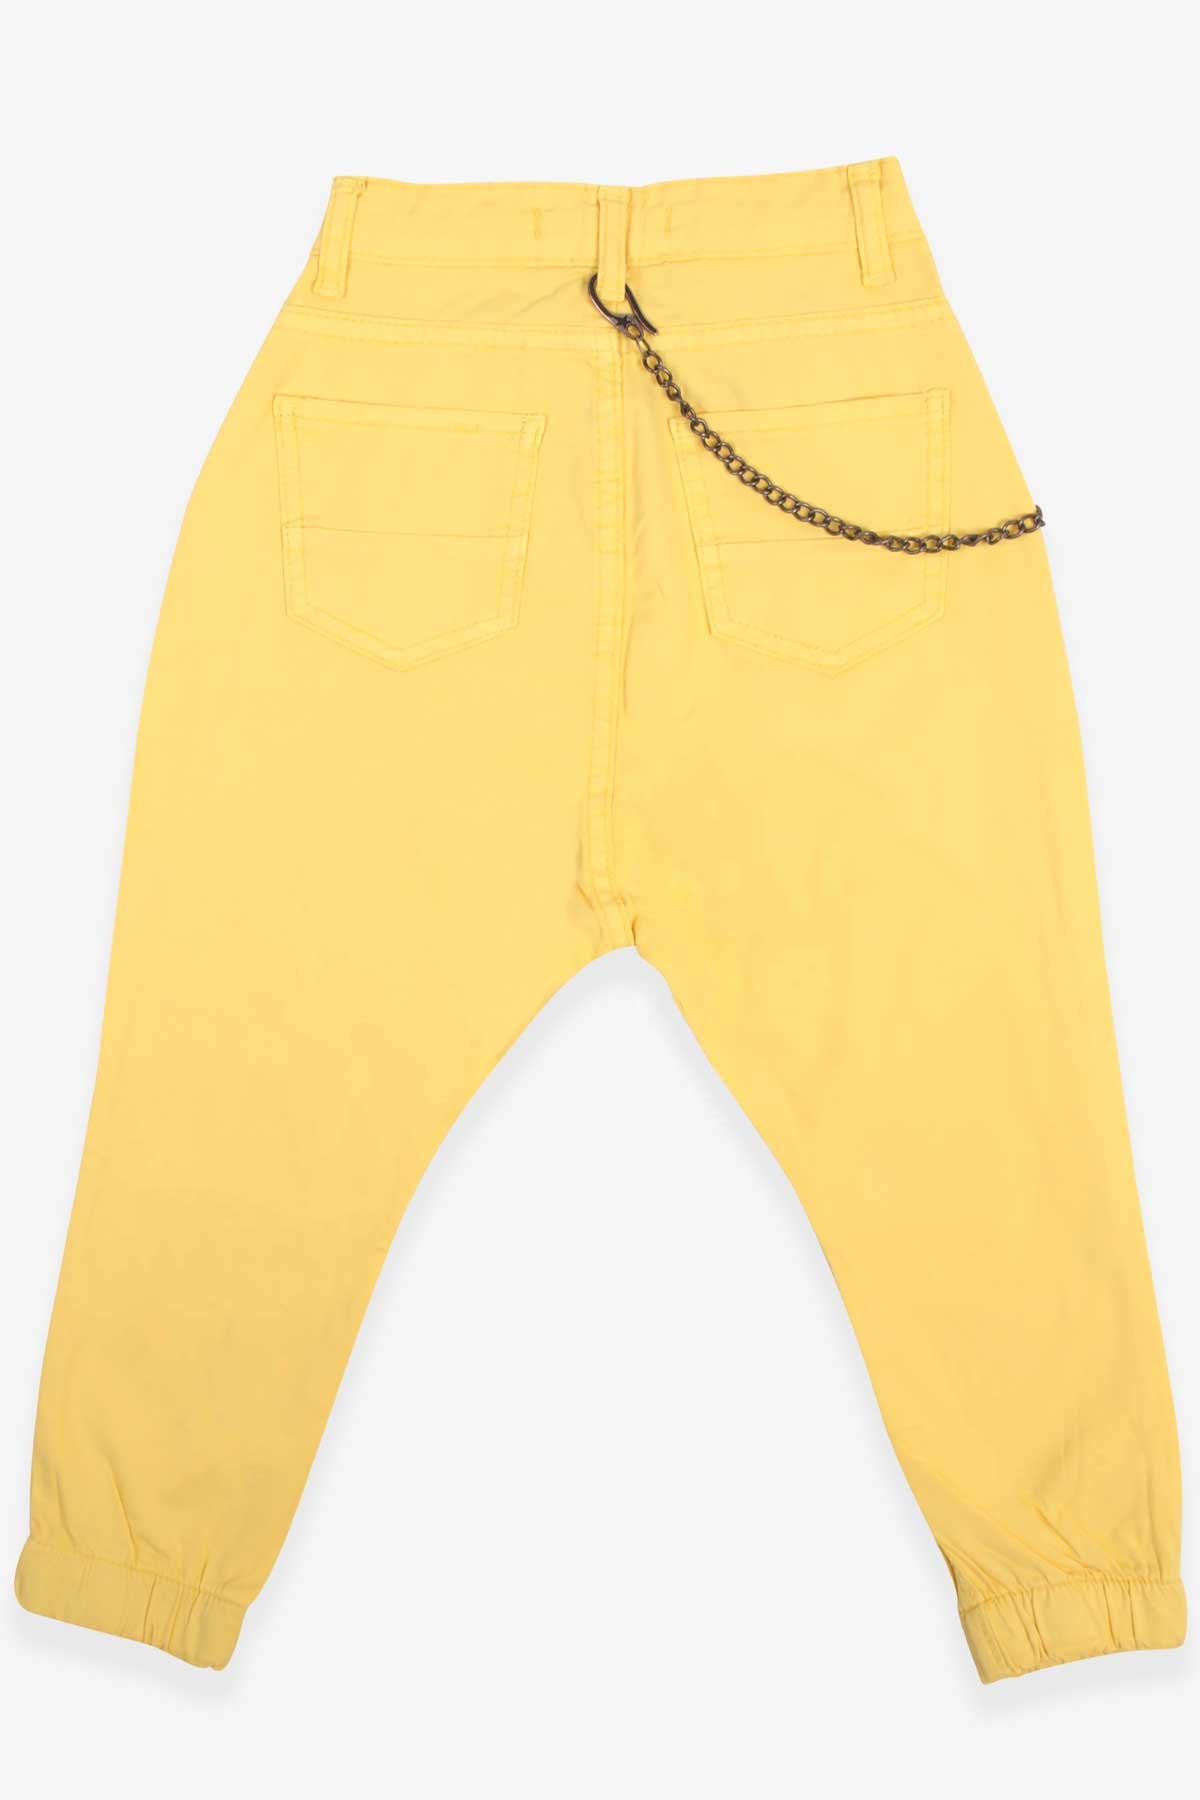 Erkek Çocuk Kot Pantolon Şalvar Kesim Sarı 5-16 Yaş - Şık Modeller | Breeze